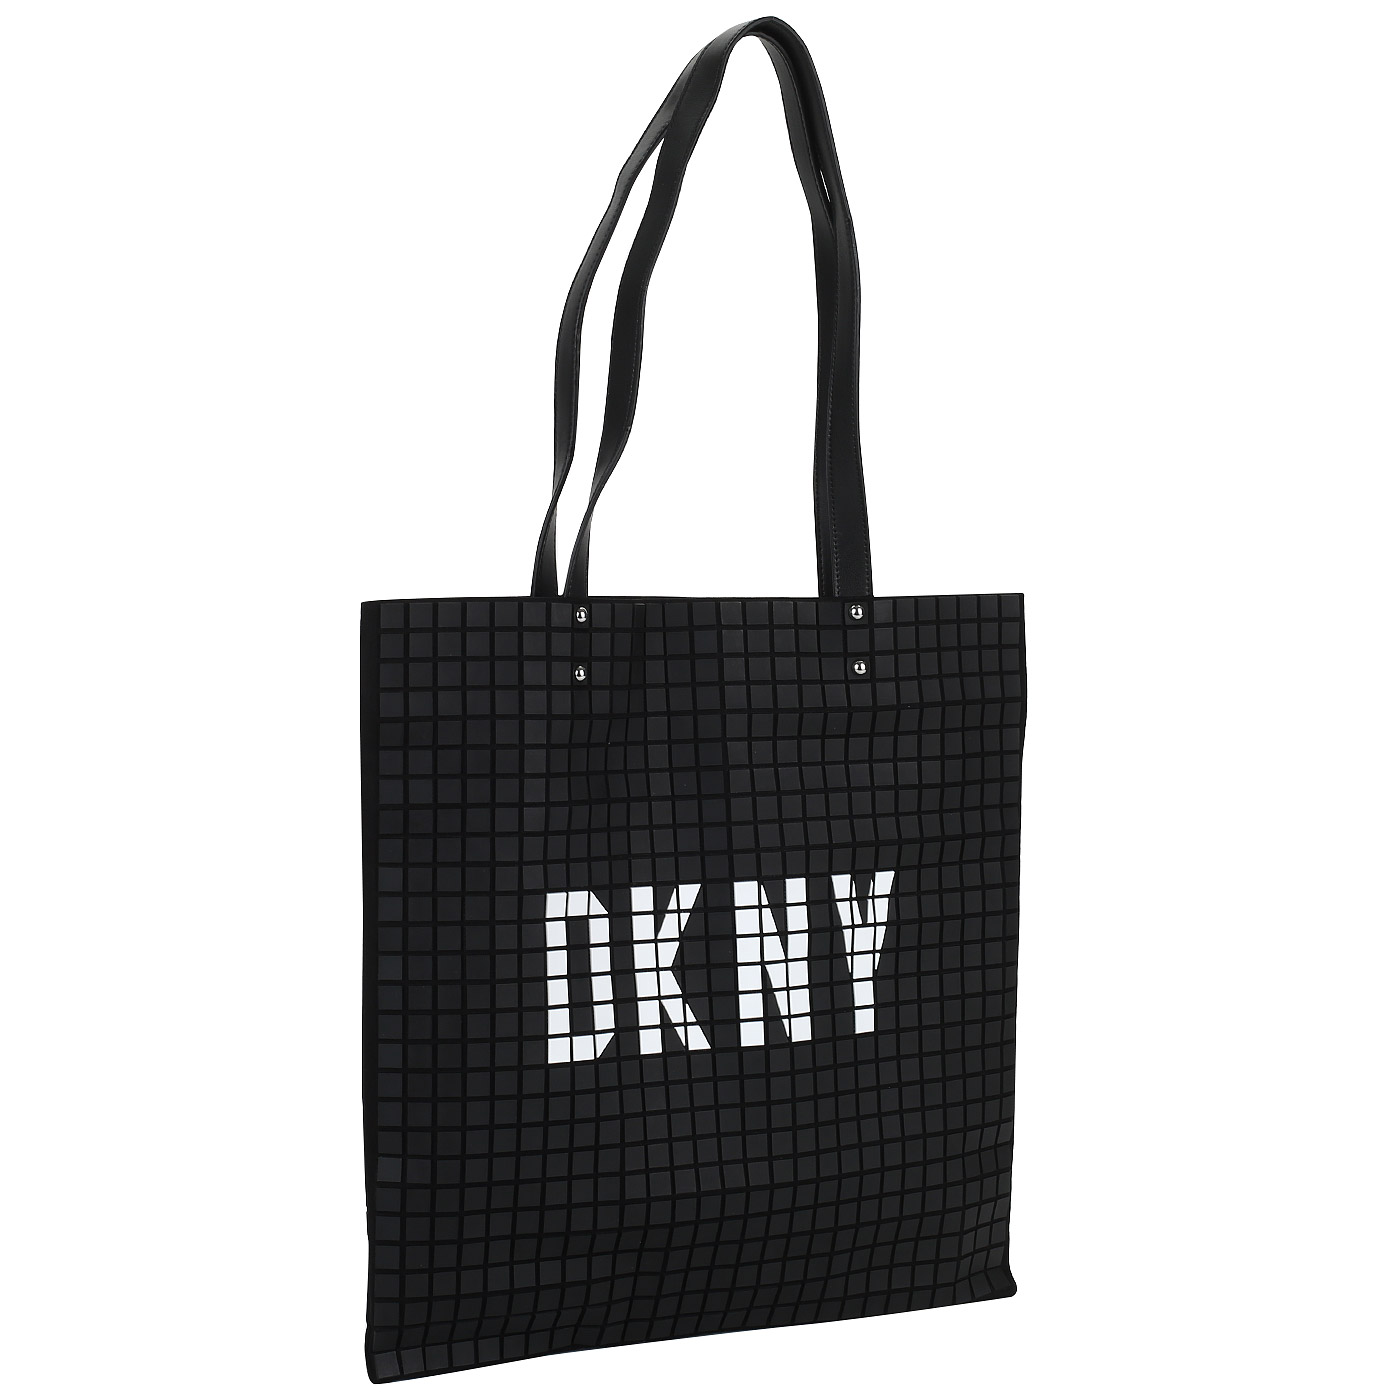 Кожаная сумка с длинными ручками DKNY St. Marks